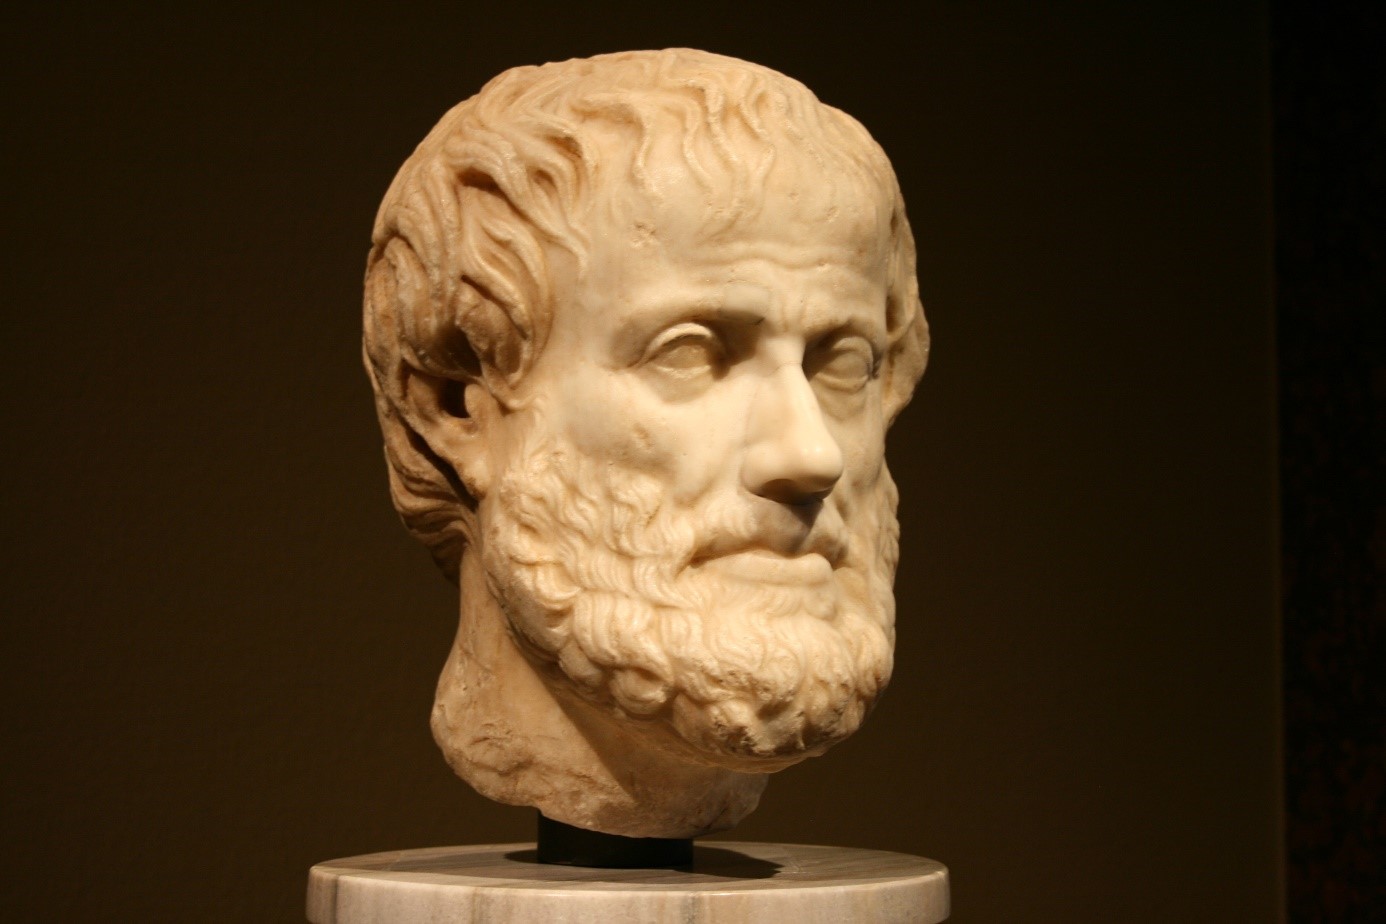 A statue of Aristoteles' head